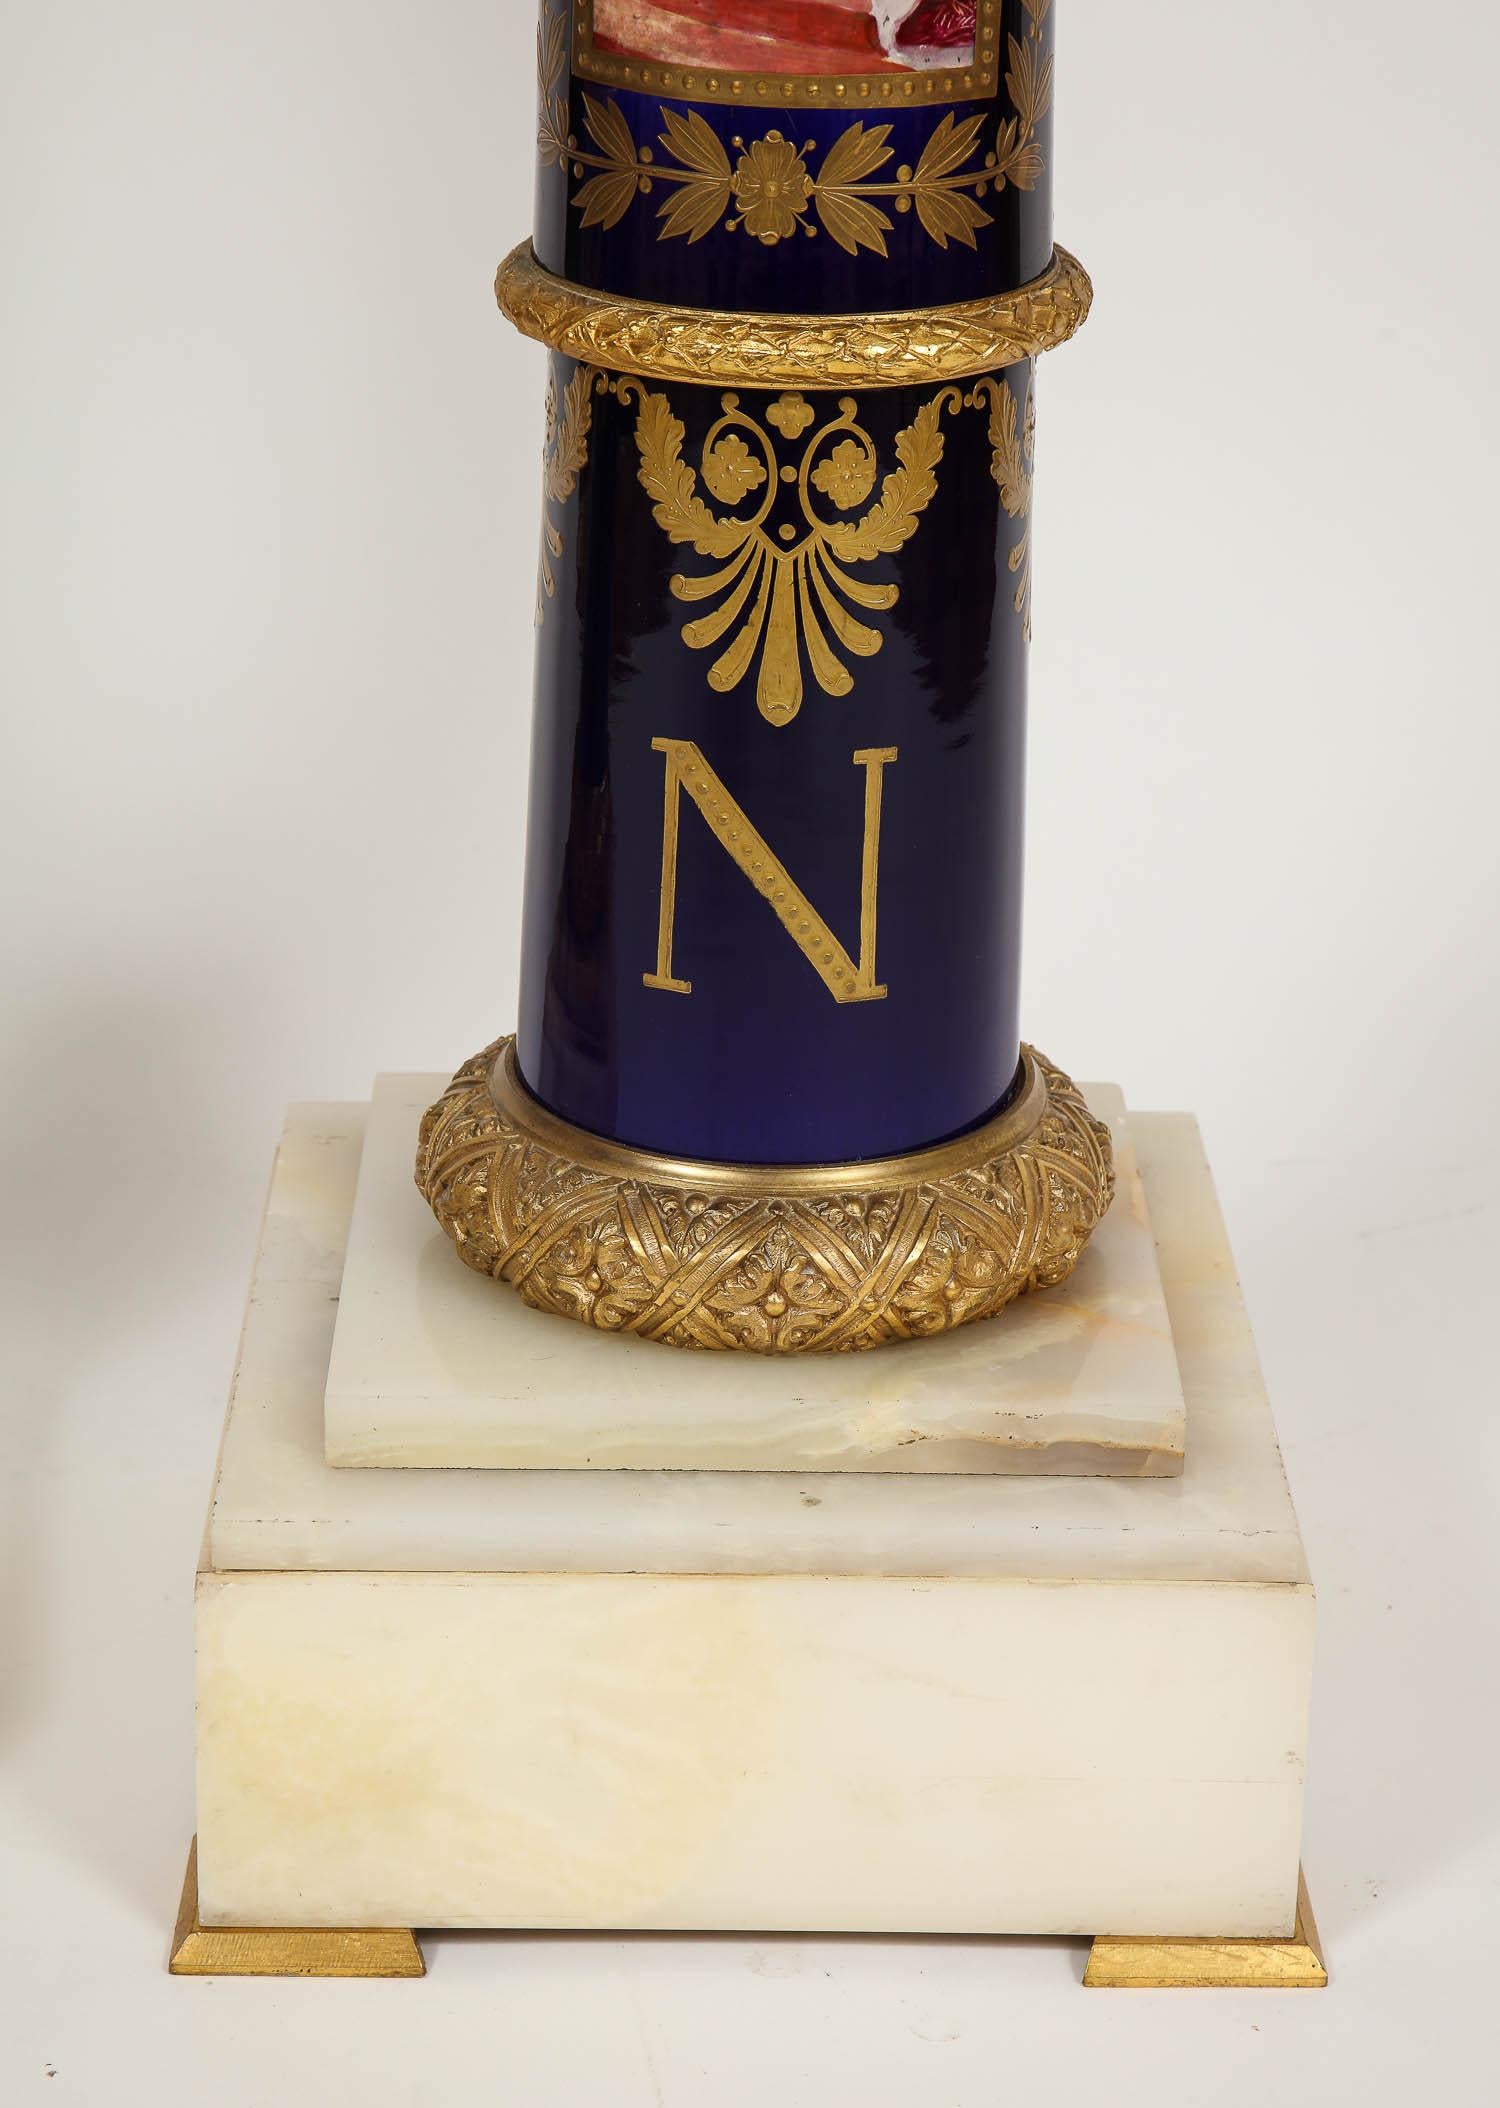 Une paire exceptionnellement grande et magnifique de piédestaux en porcelaine de Sèvres de l'Empire français Napoléonien montés sur bronze doré. Il s'agit d'une paire exceptionnellement belle de piédestaux du XIXe siècle, décorés d'or en relief 24